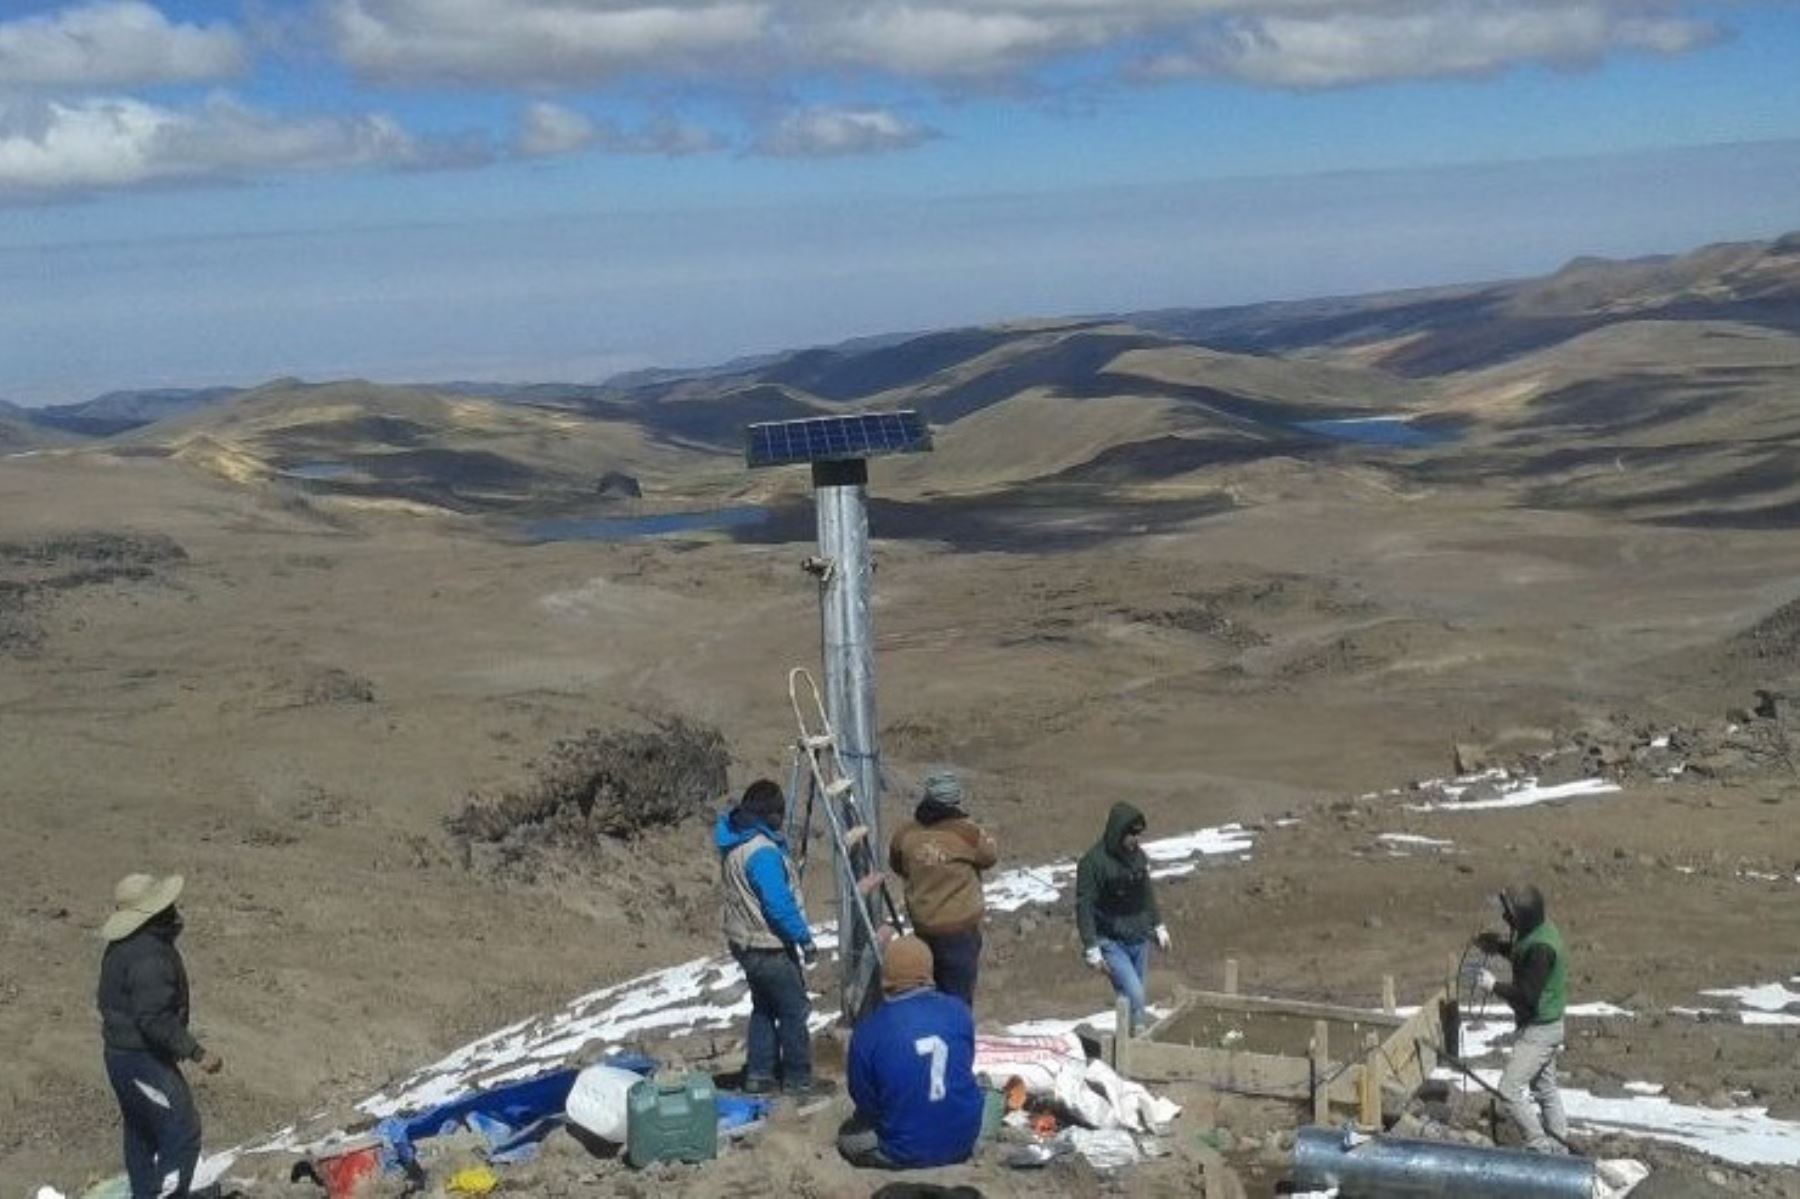 El Instituto Geofísico del Perú (IGP) inició la instalación de las primeras estaciones de monitoreo permanente para vigilar en tiempo real la actividad del volcán Coropuna, ubicado en la región Arequipa.